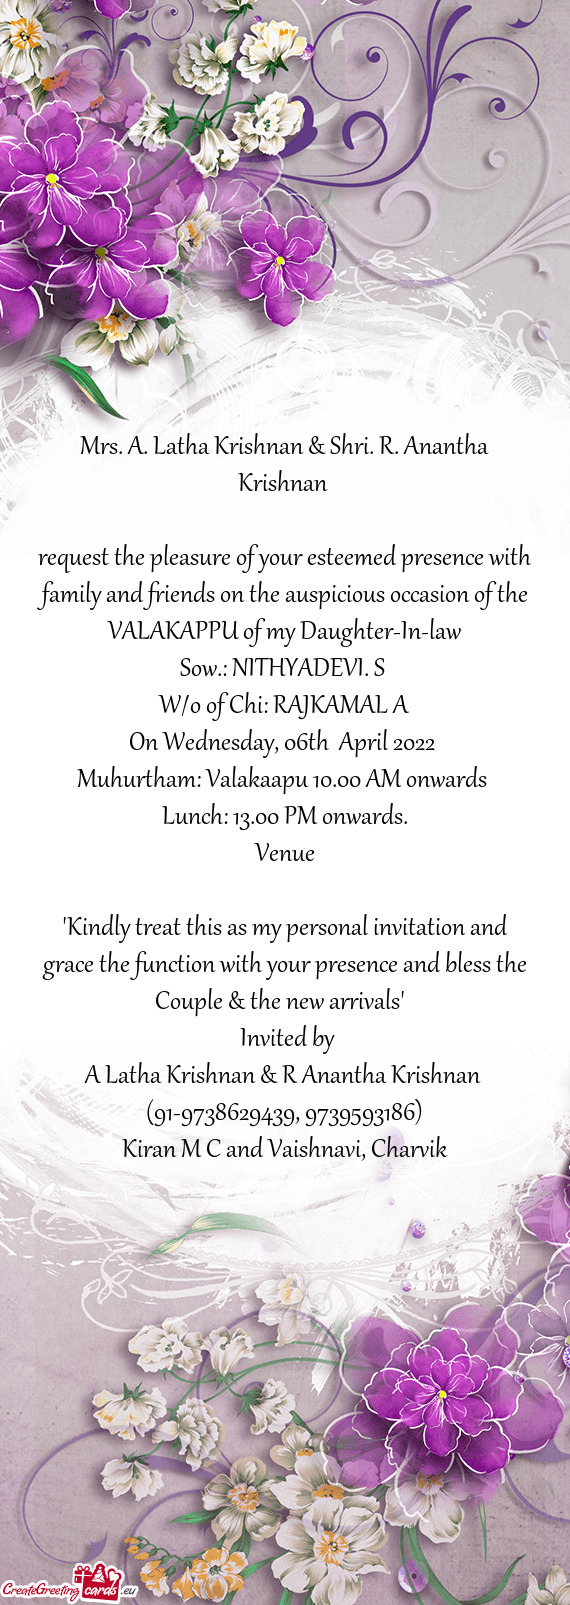 Mrs. A. Latha Krishnan & Shri. R. Anantha Krishnan